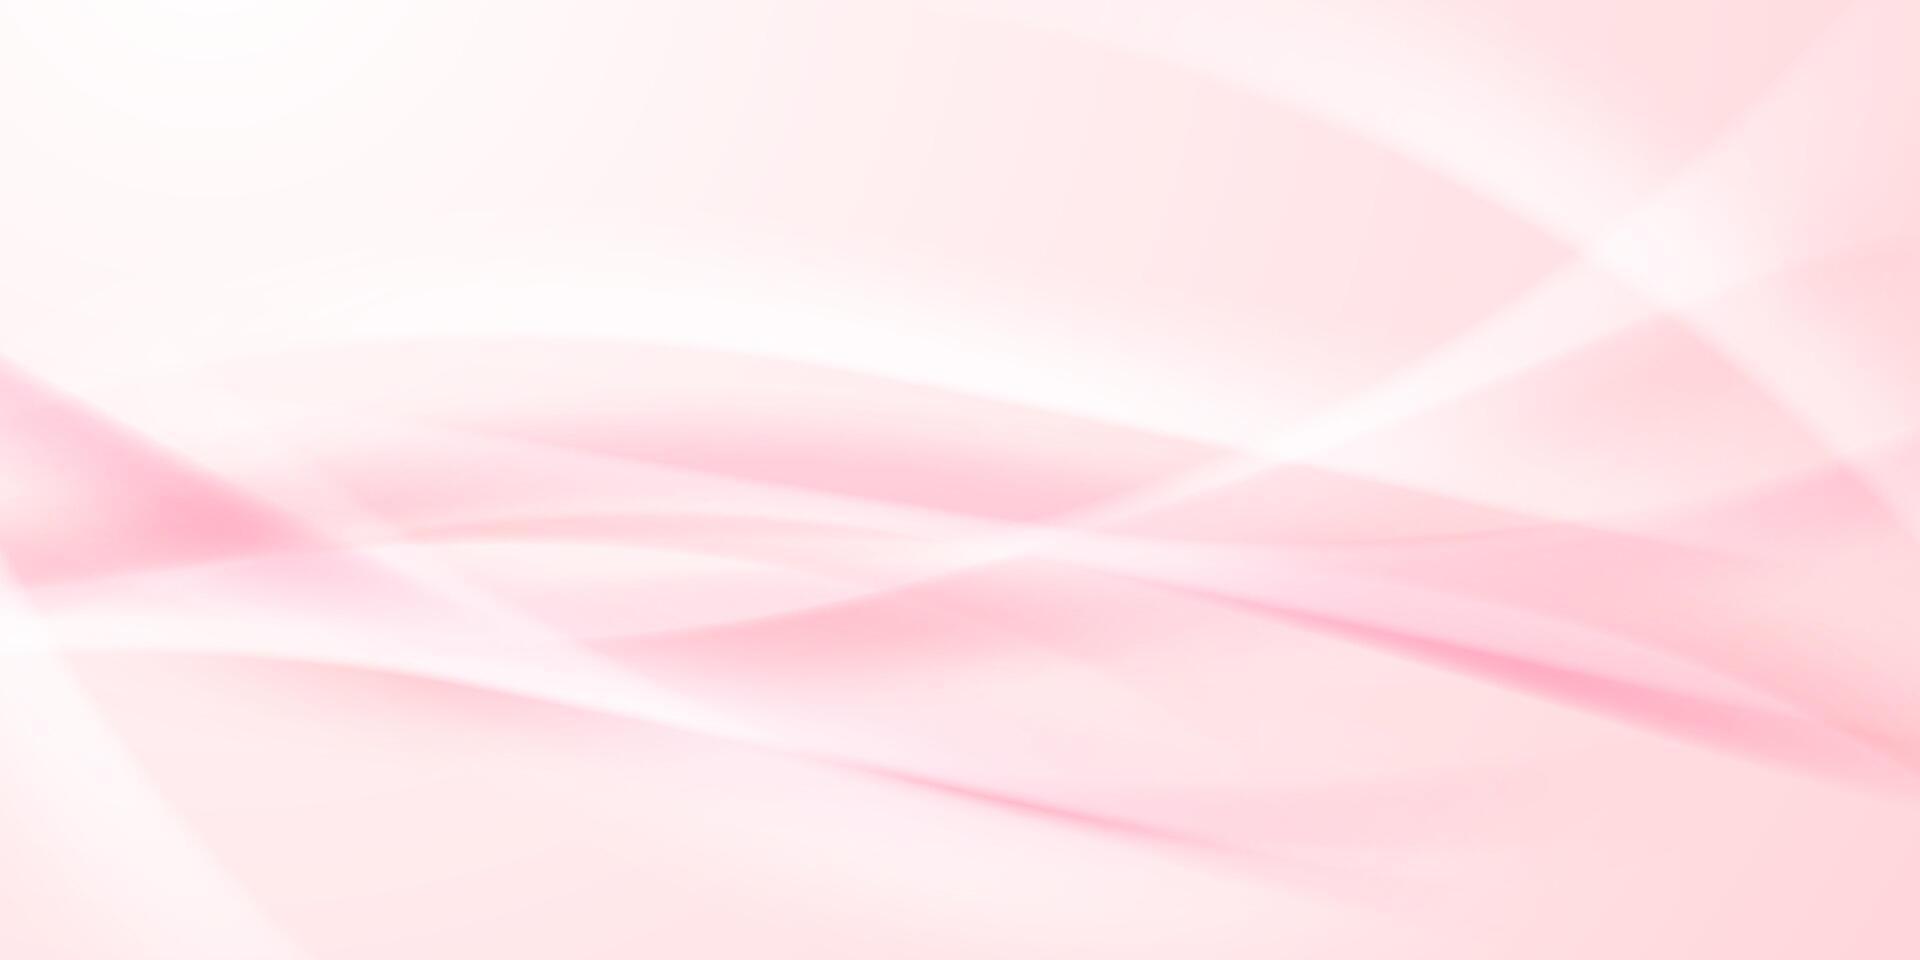 achtergrond ontwerp voor gelukkig Valentijnsdag dag poster of tegoedbon met elegant roze achtergrond. vector illustratie